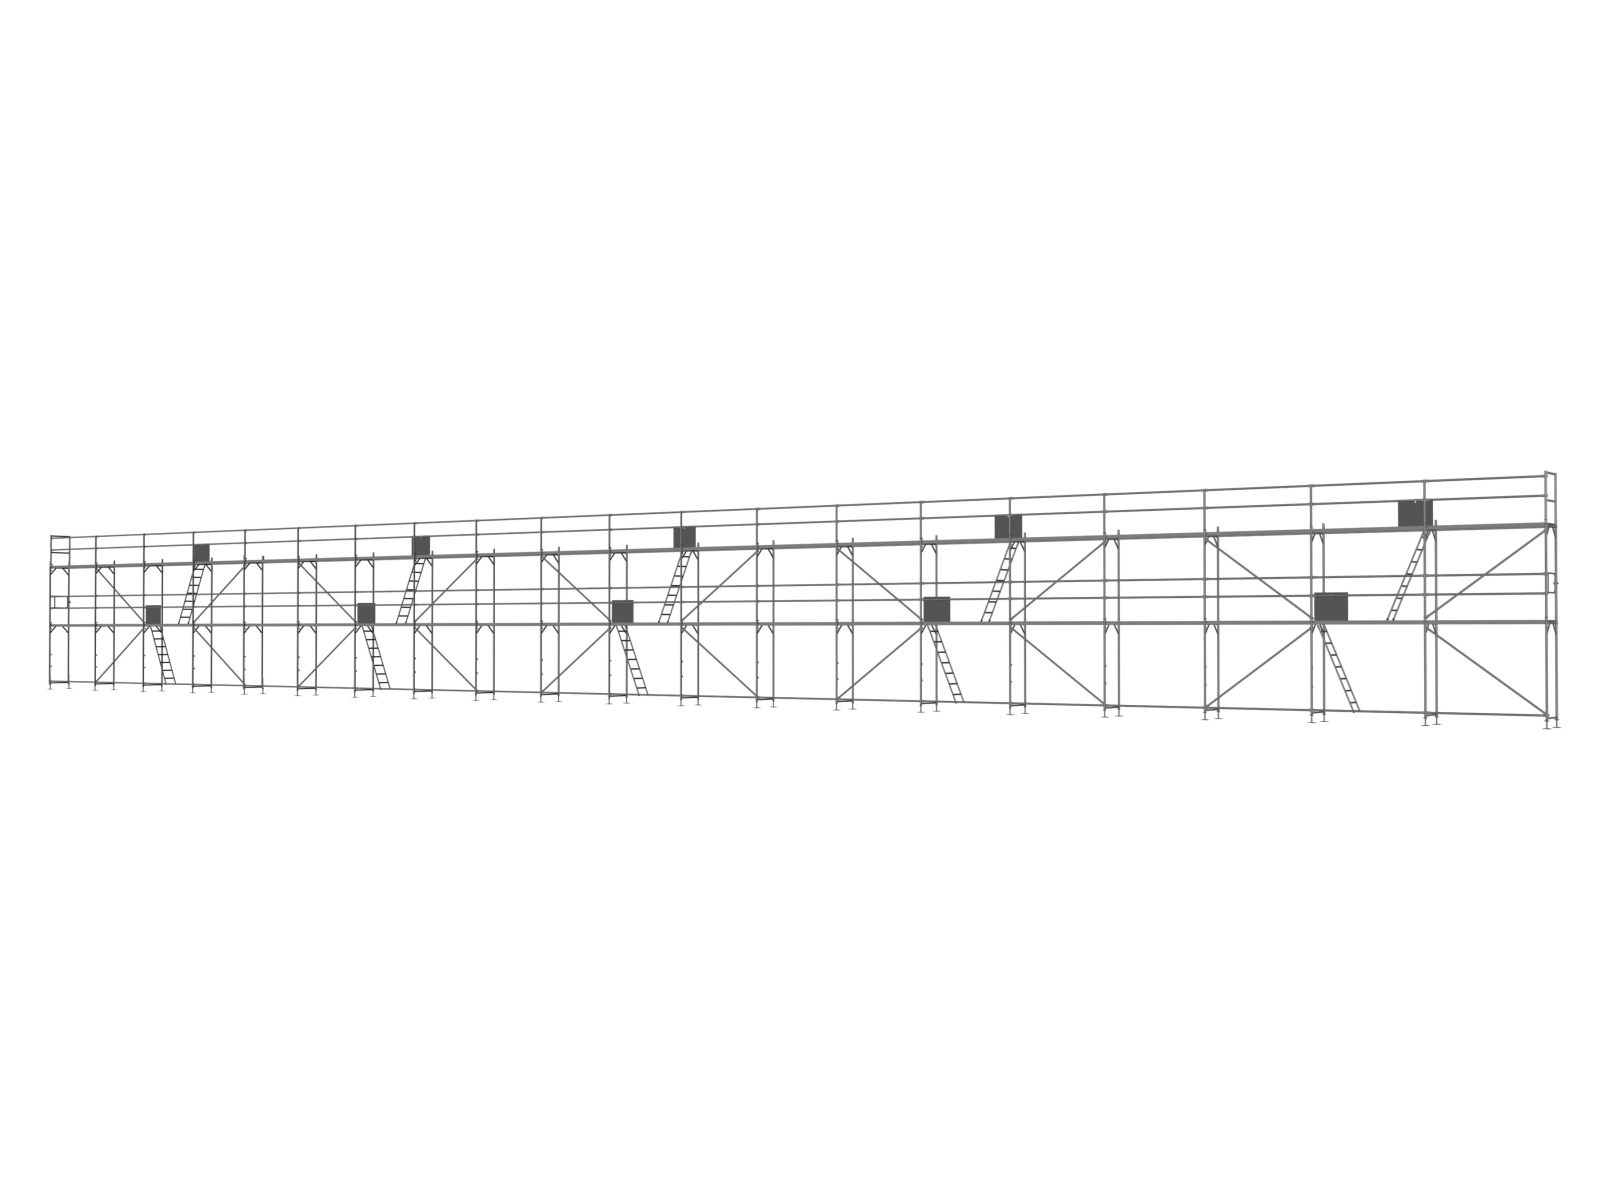 Stahl Traufseitengerüst 300 m² - 2,5 m Felder - 50 m lang - 6 m Arbeitshöhe - Basis-Gerüst inkl. Aufstieg & Befestigung